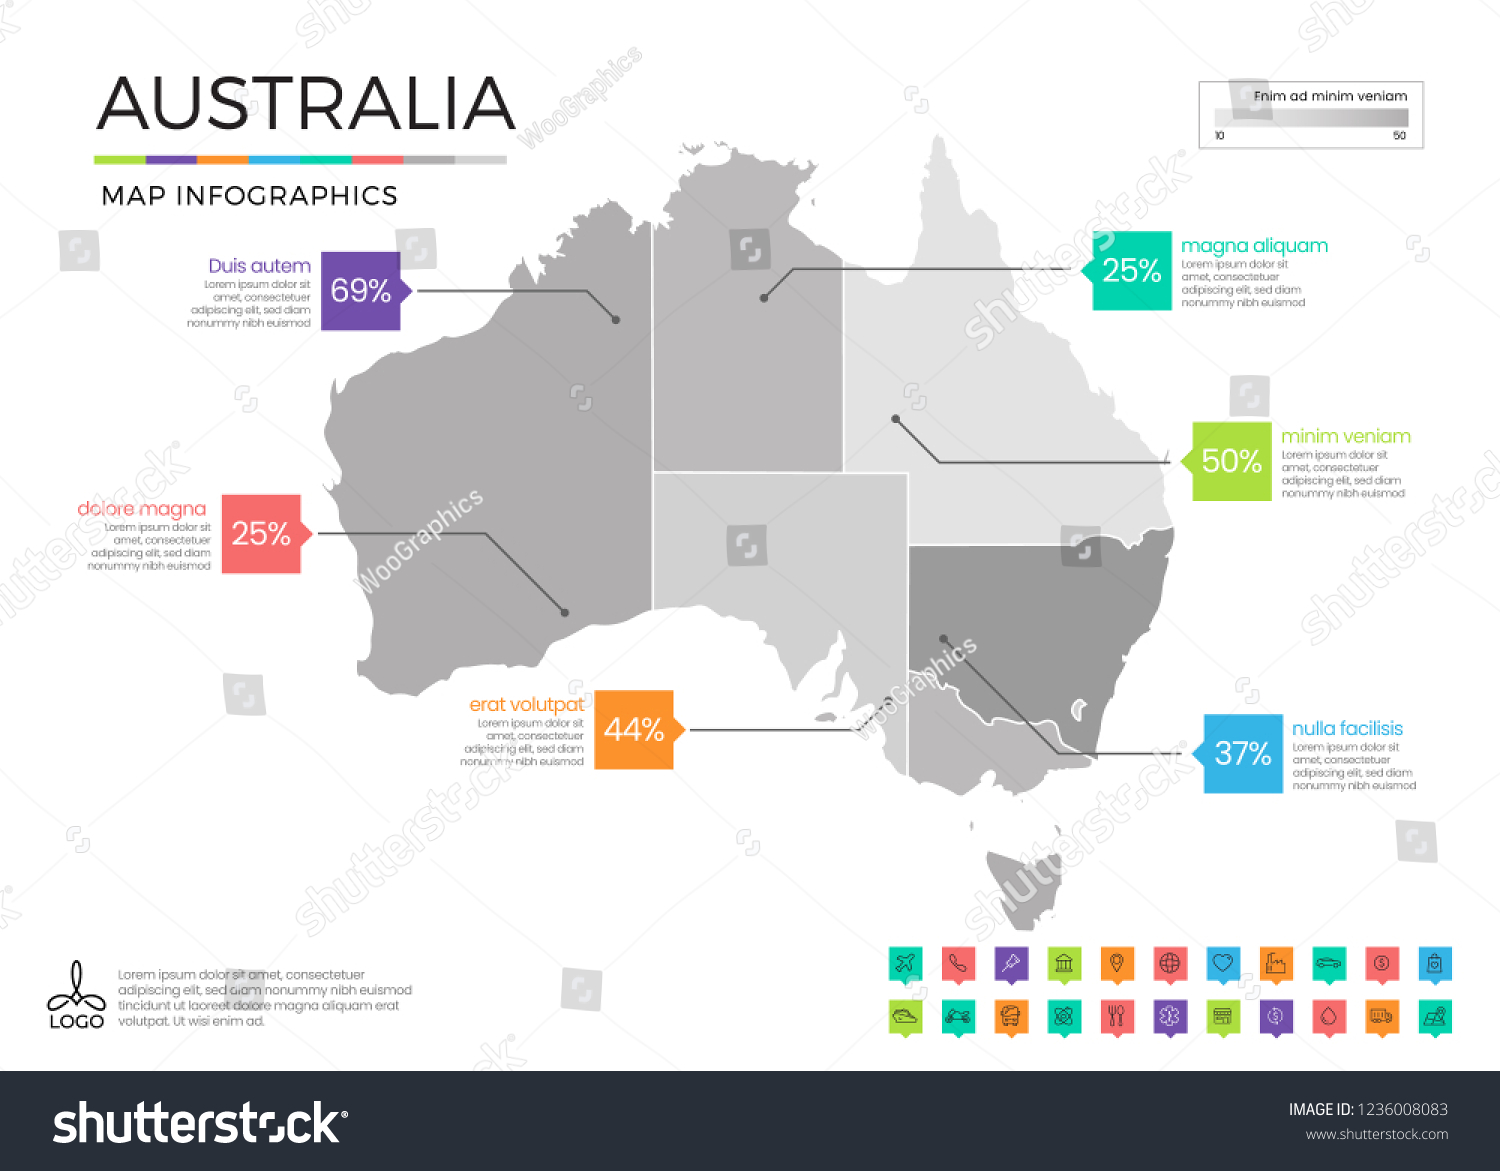 オーストラリアの地図インフォグラフィックスで ベクター画像で分割された編集可能な画層 ゾーン エレメント および地区領域を使用 のベクター画像素材 ロイヤリティフリー